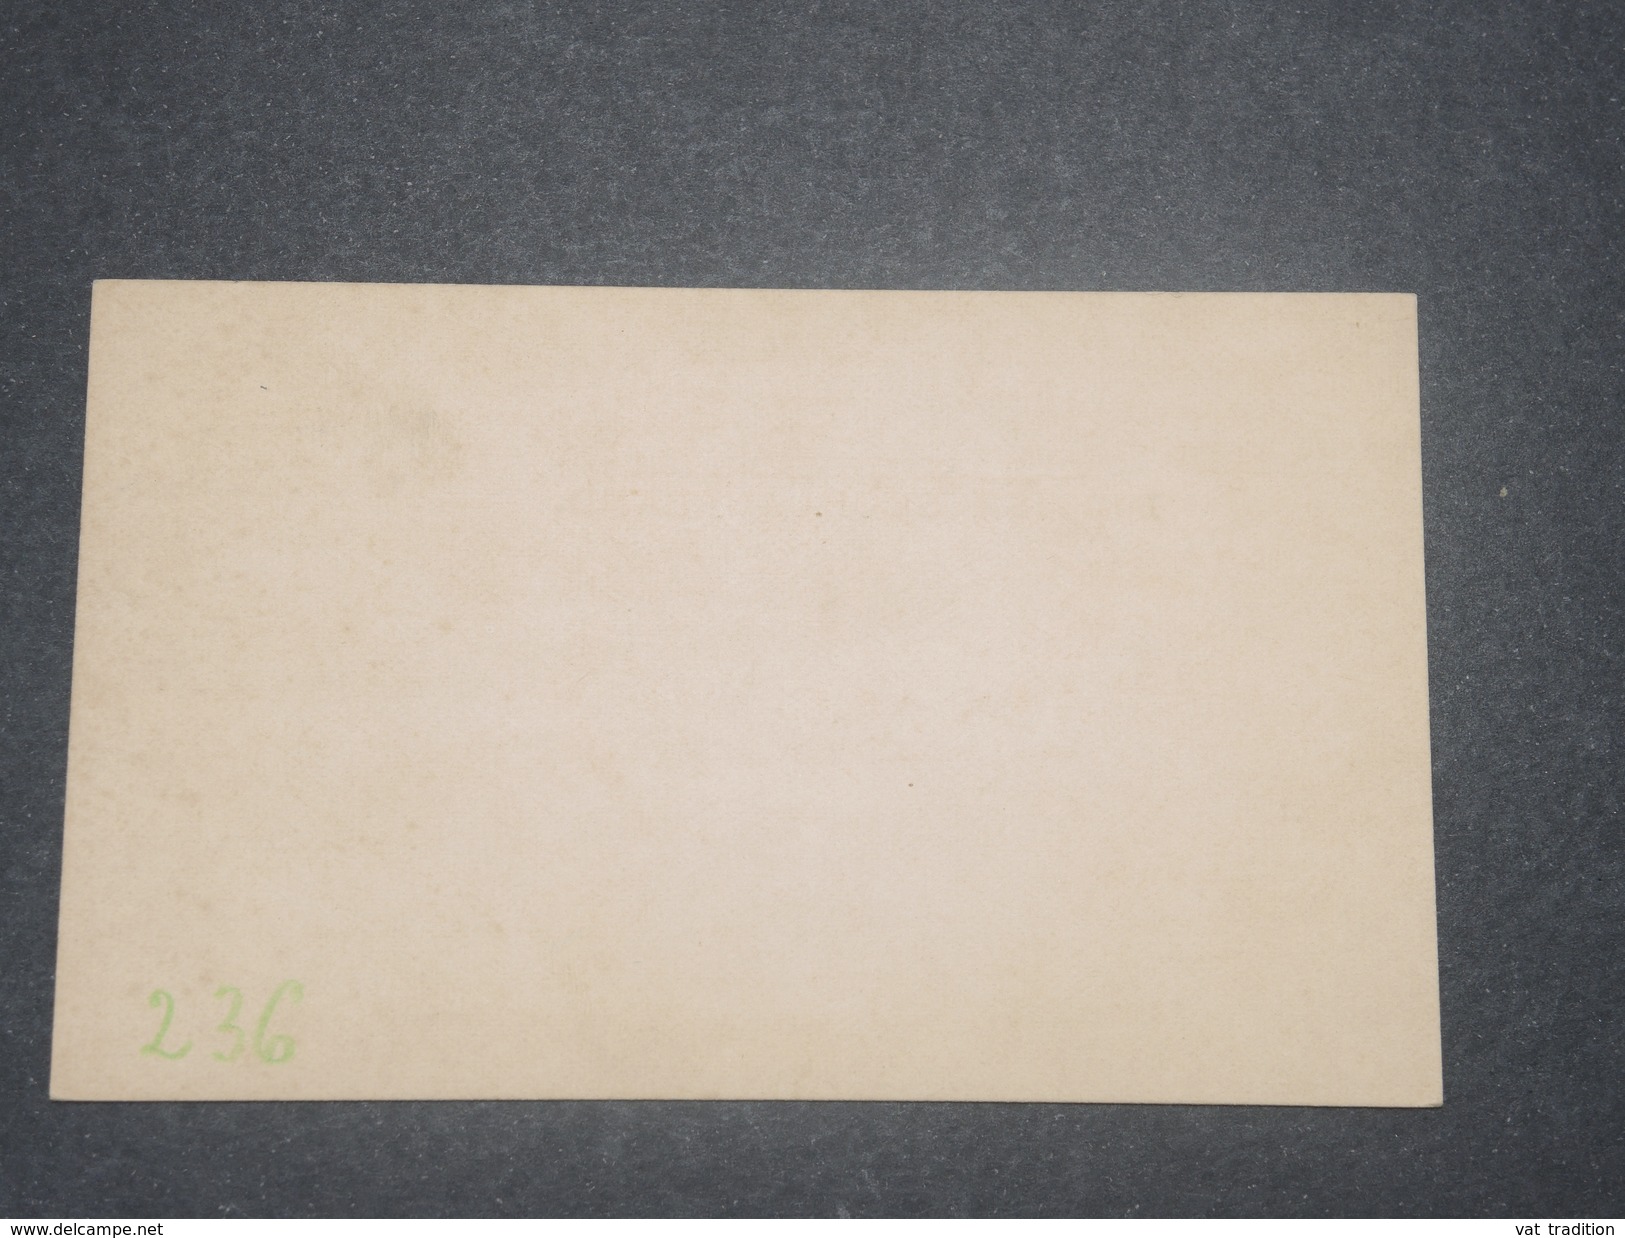 BECHUANALAND - Entier Postal Surchargé Non Voyagé - L 8490 - 1885-1895 Colonia Británica